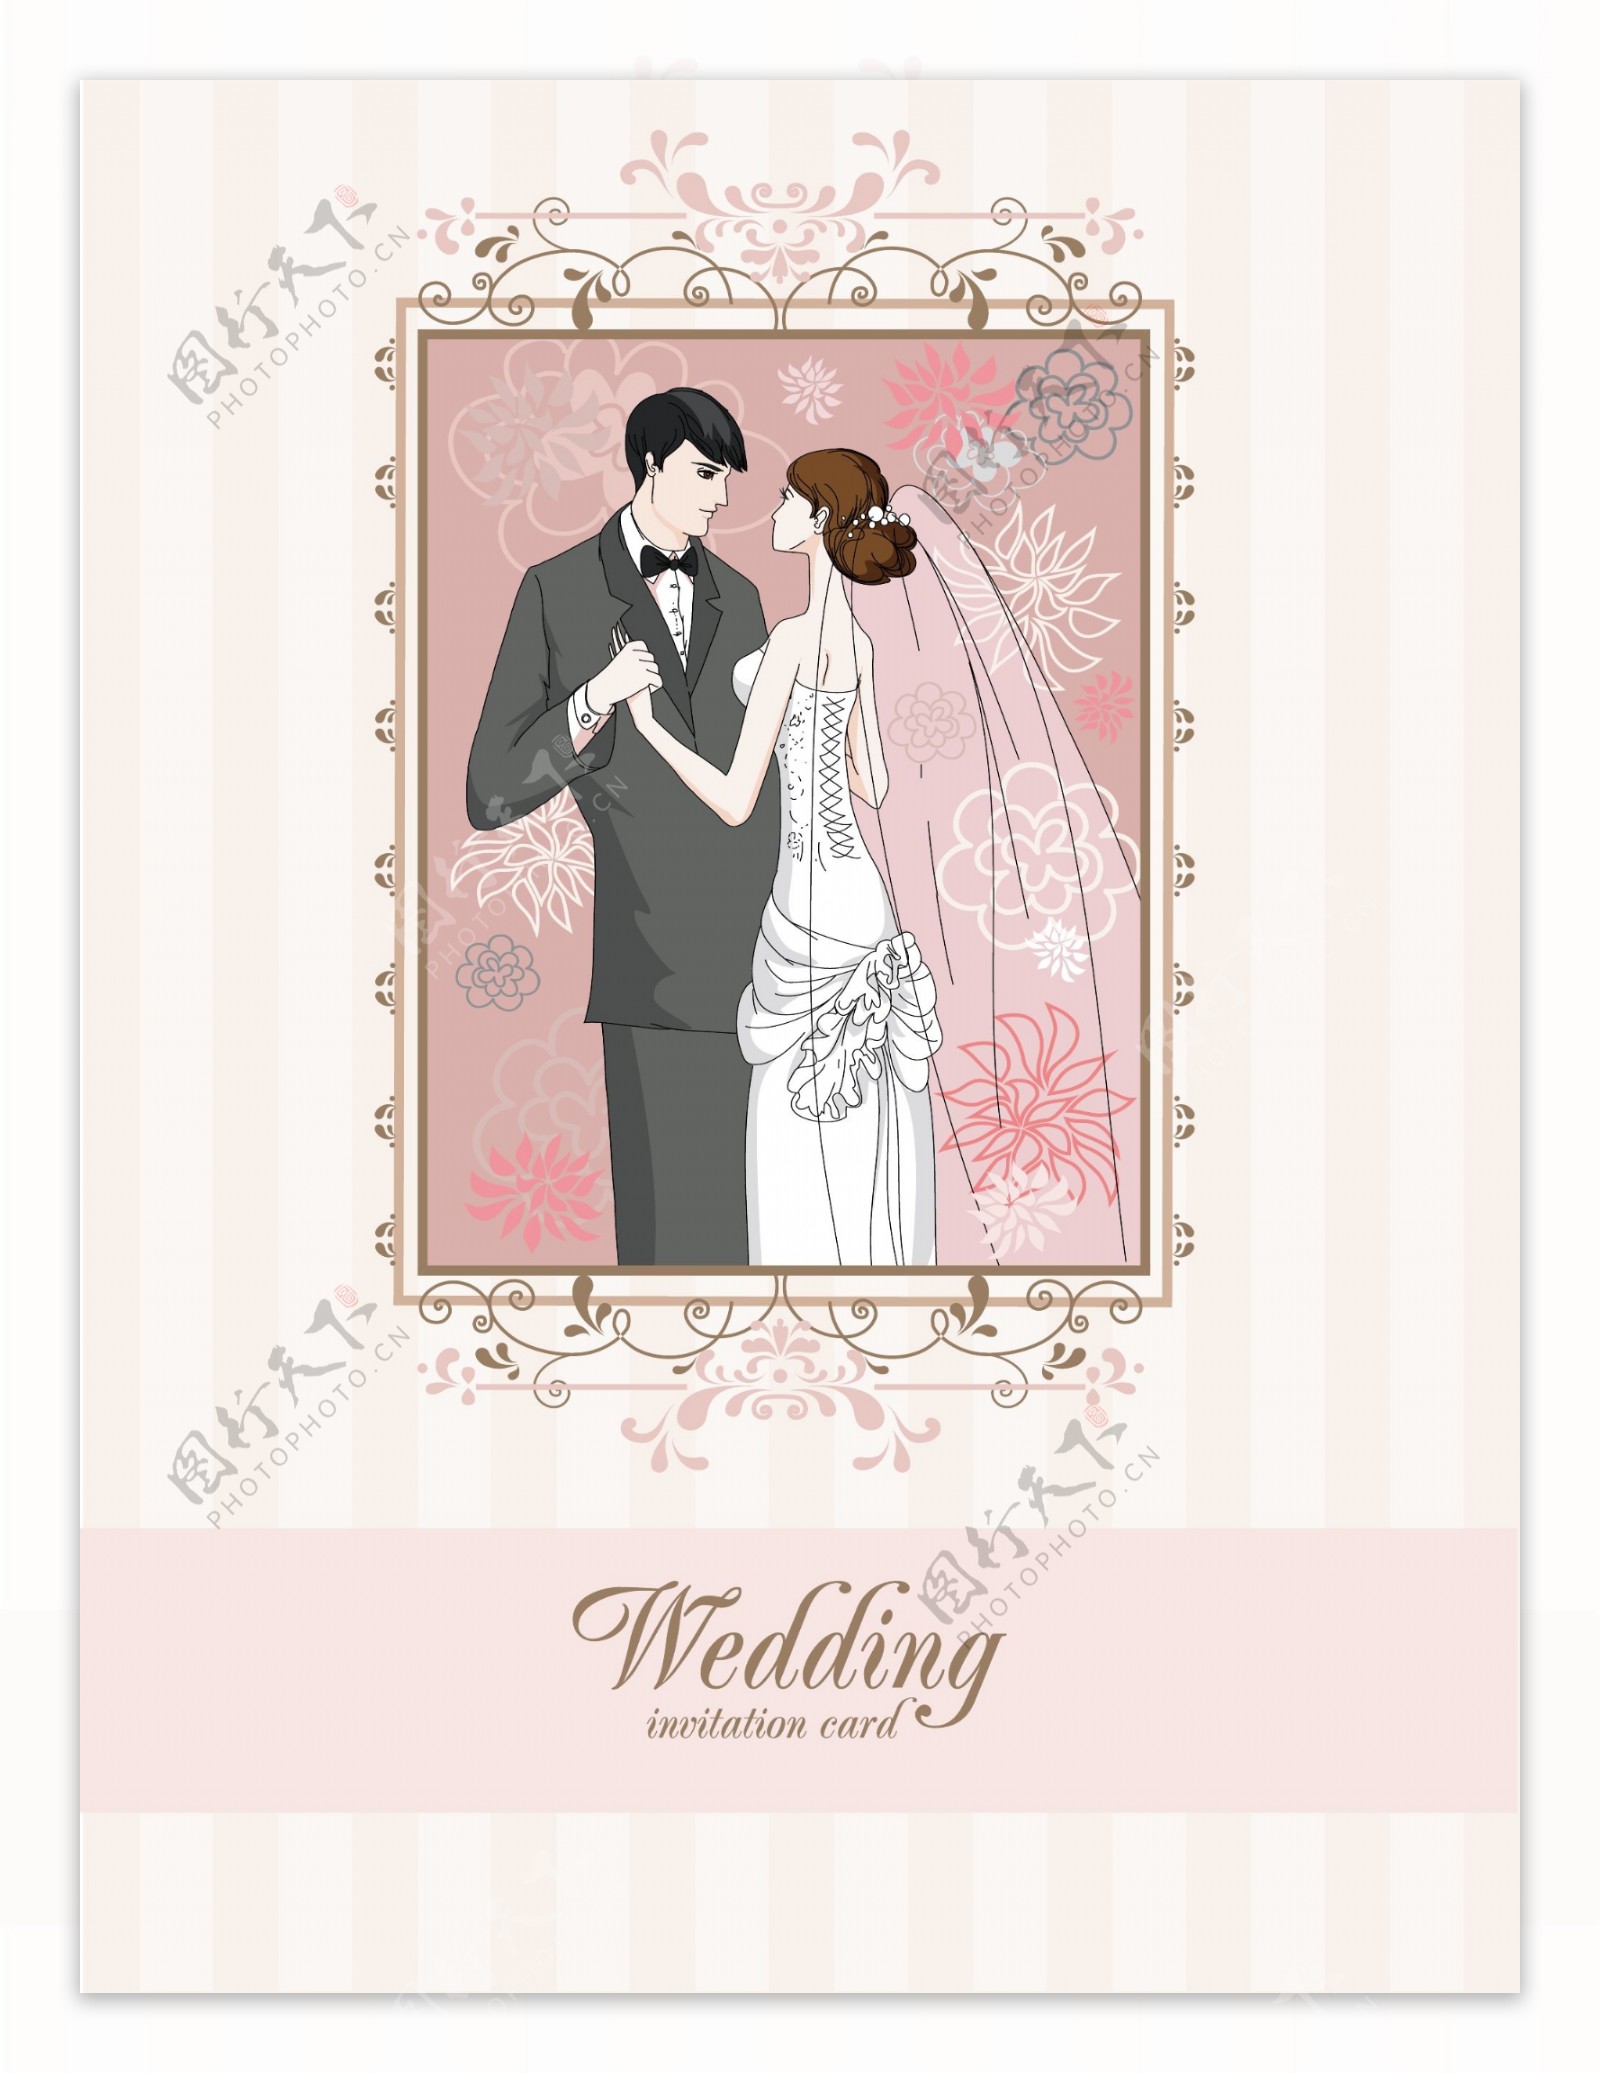 时尚婚礼卡片背景矢量素材4